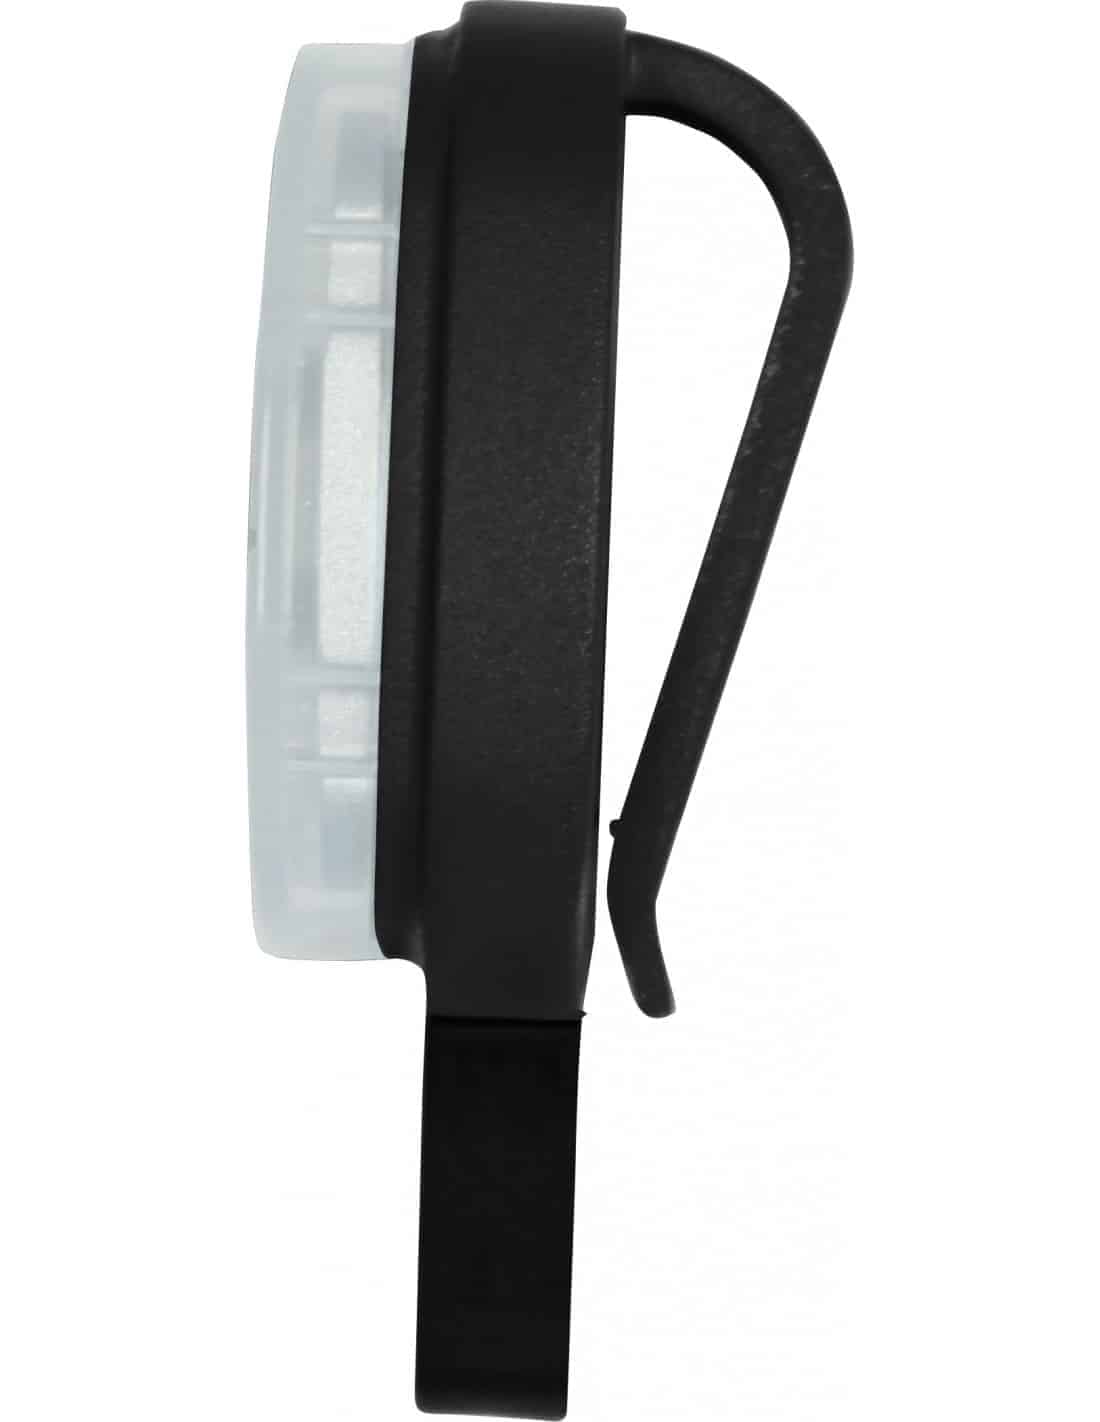 Lampe frontale rechargeable USB noir portwest